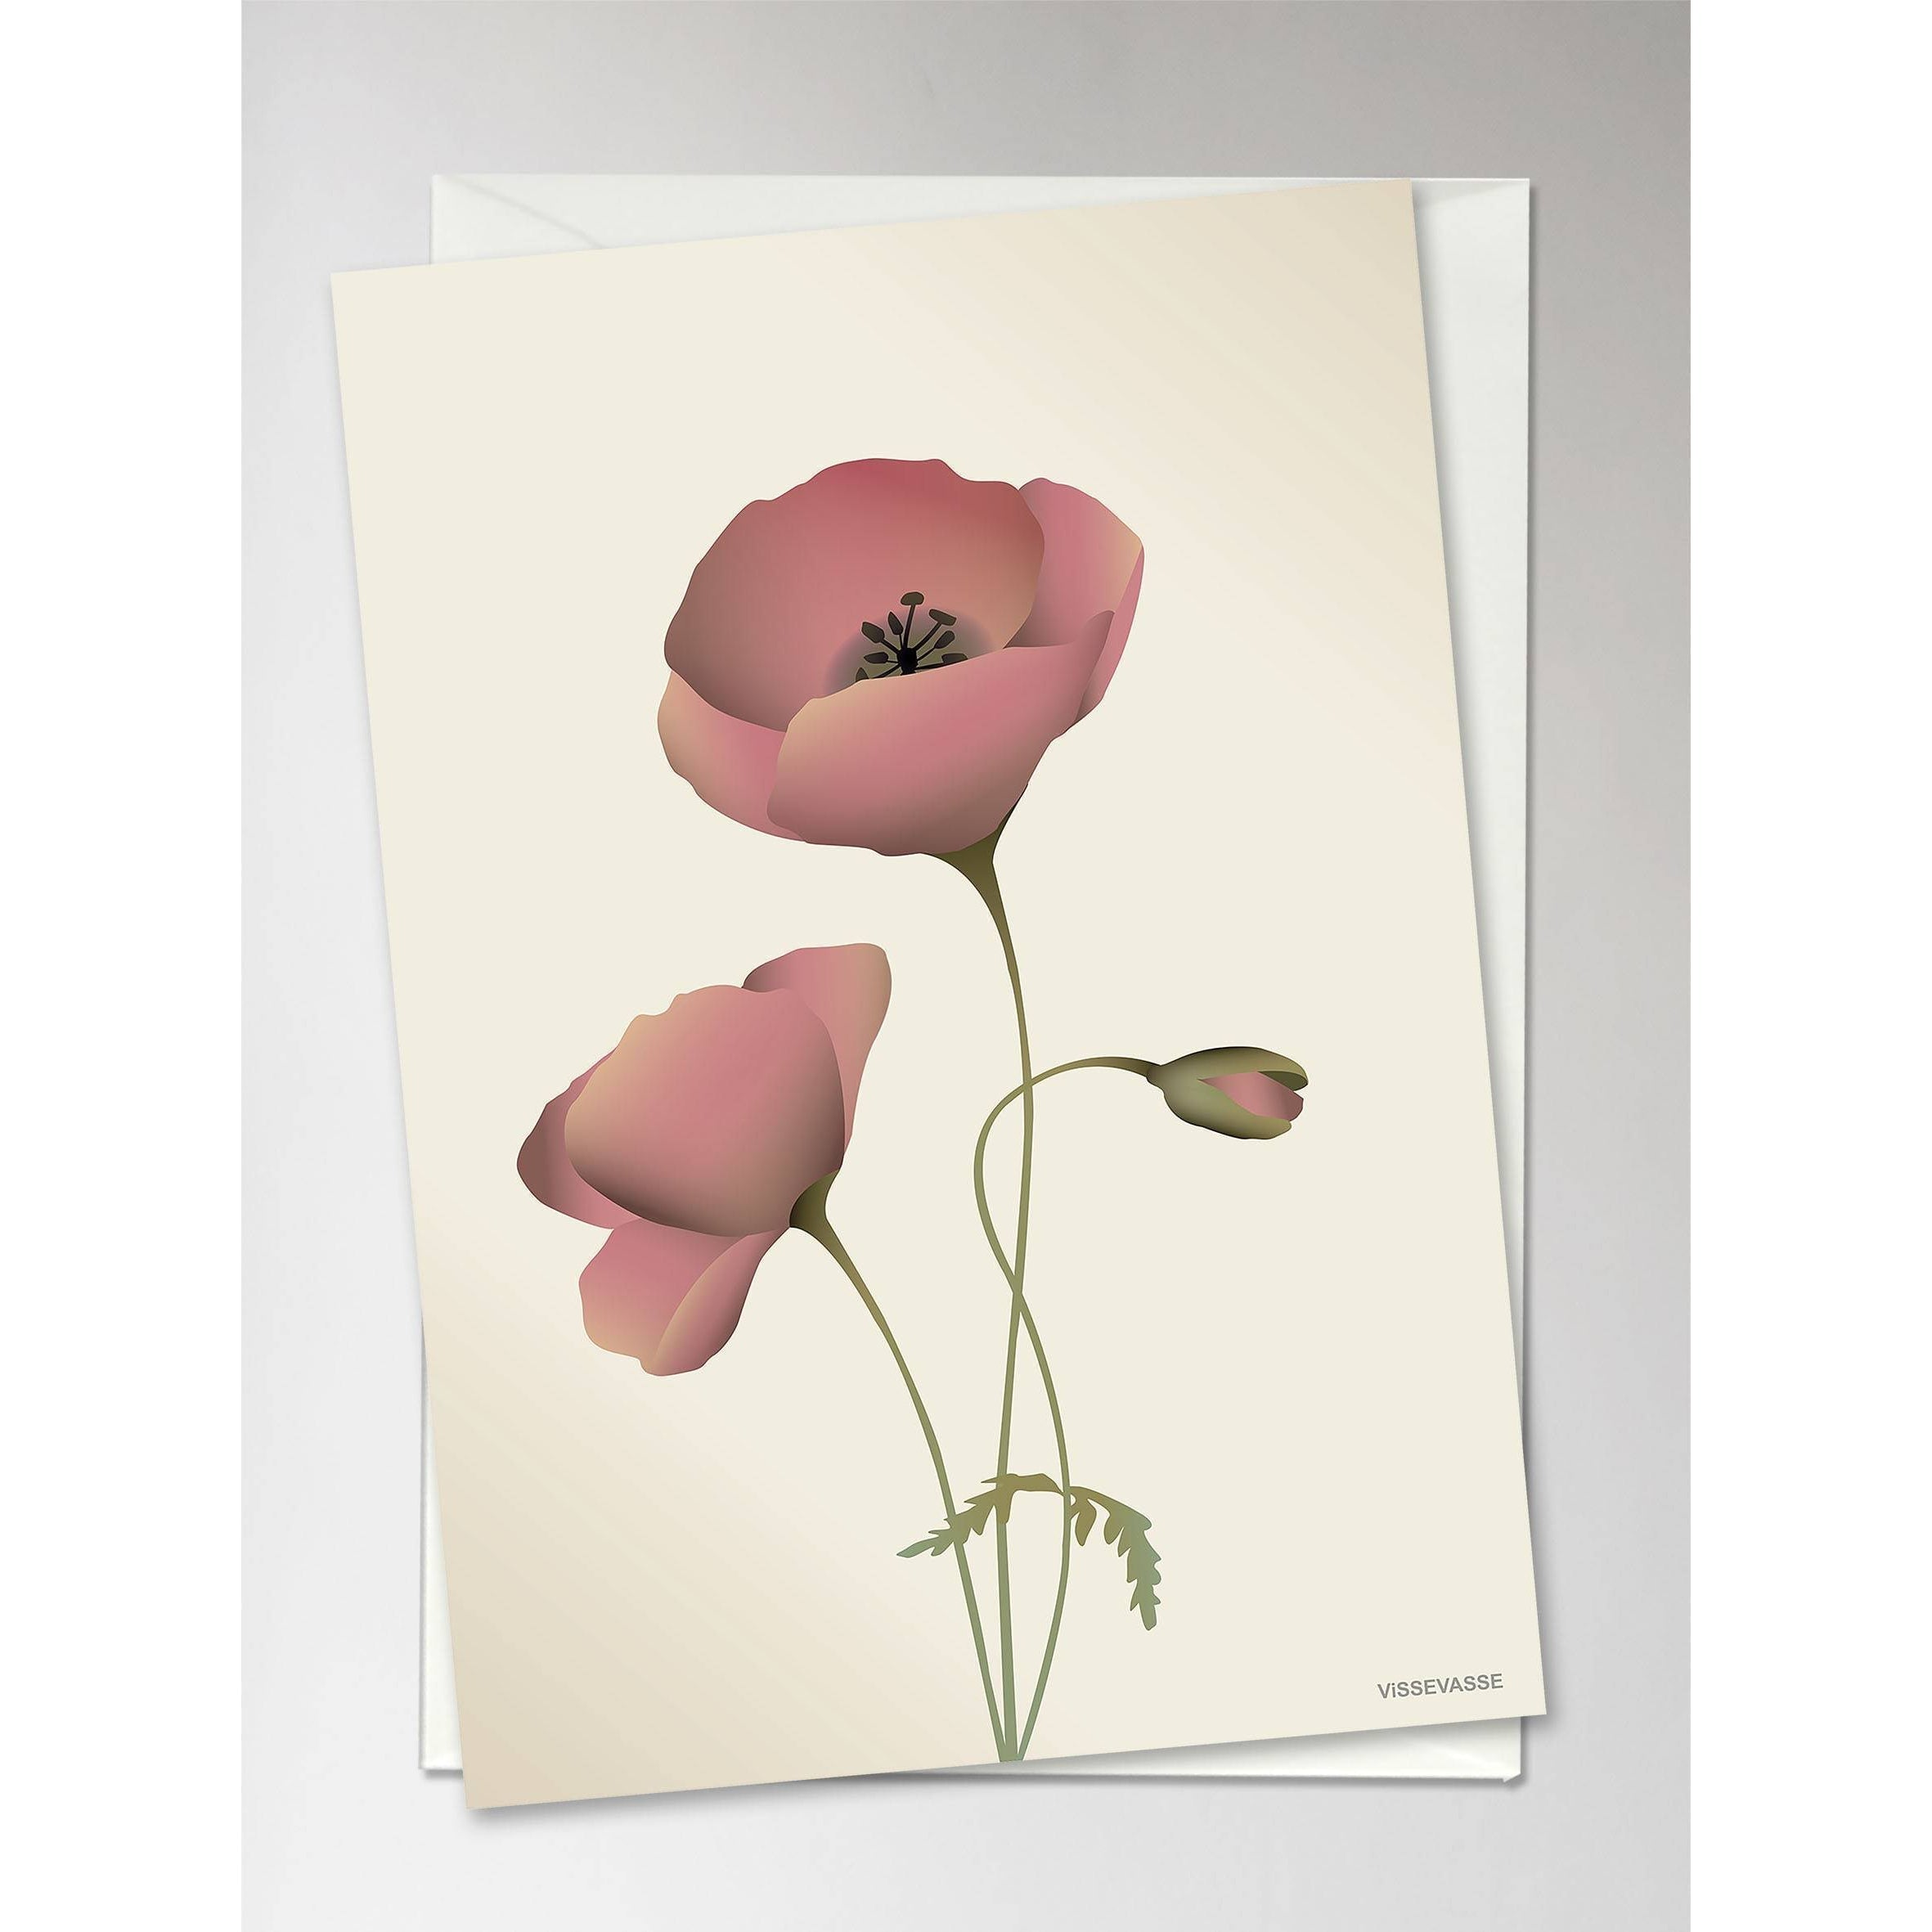 Vissevasse Poppy lykønskningskort, marengs, 10,5x15cm